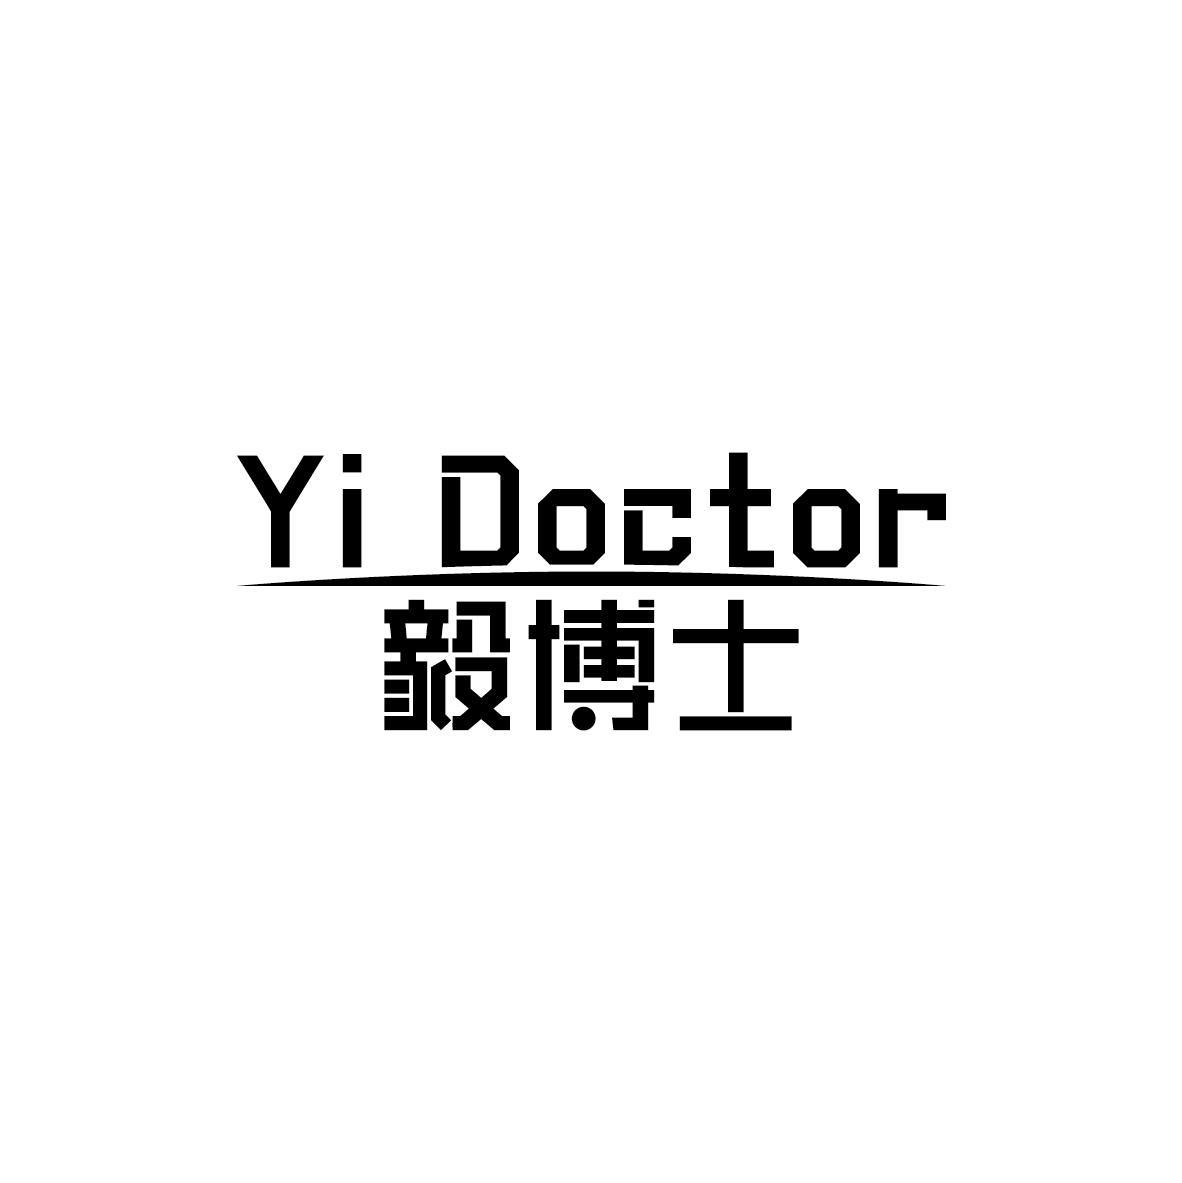 YI DOCTOR 毅博士